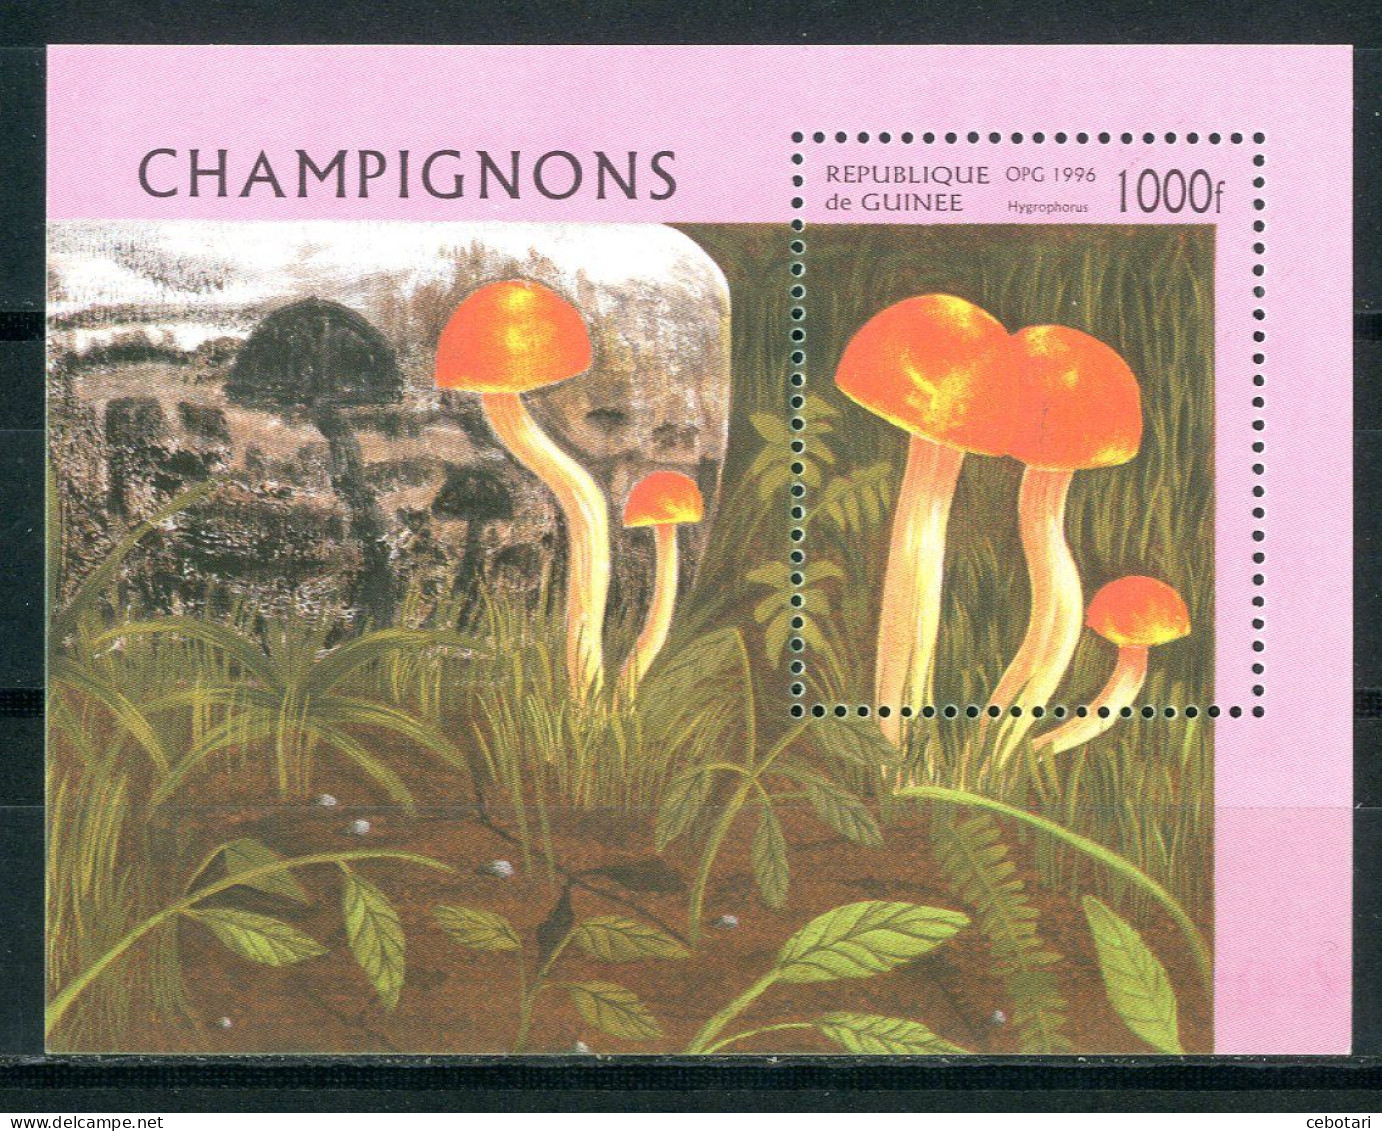 GUINEA / GUINEE 1996** - Funghi / Mushrooms - Miniblock. - Hongos